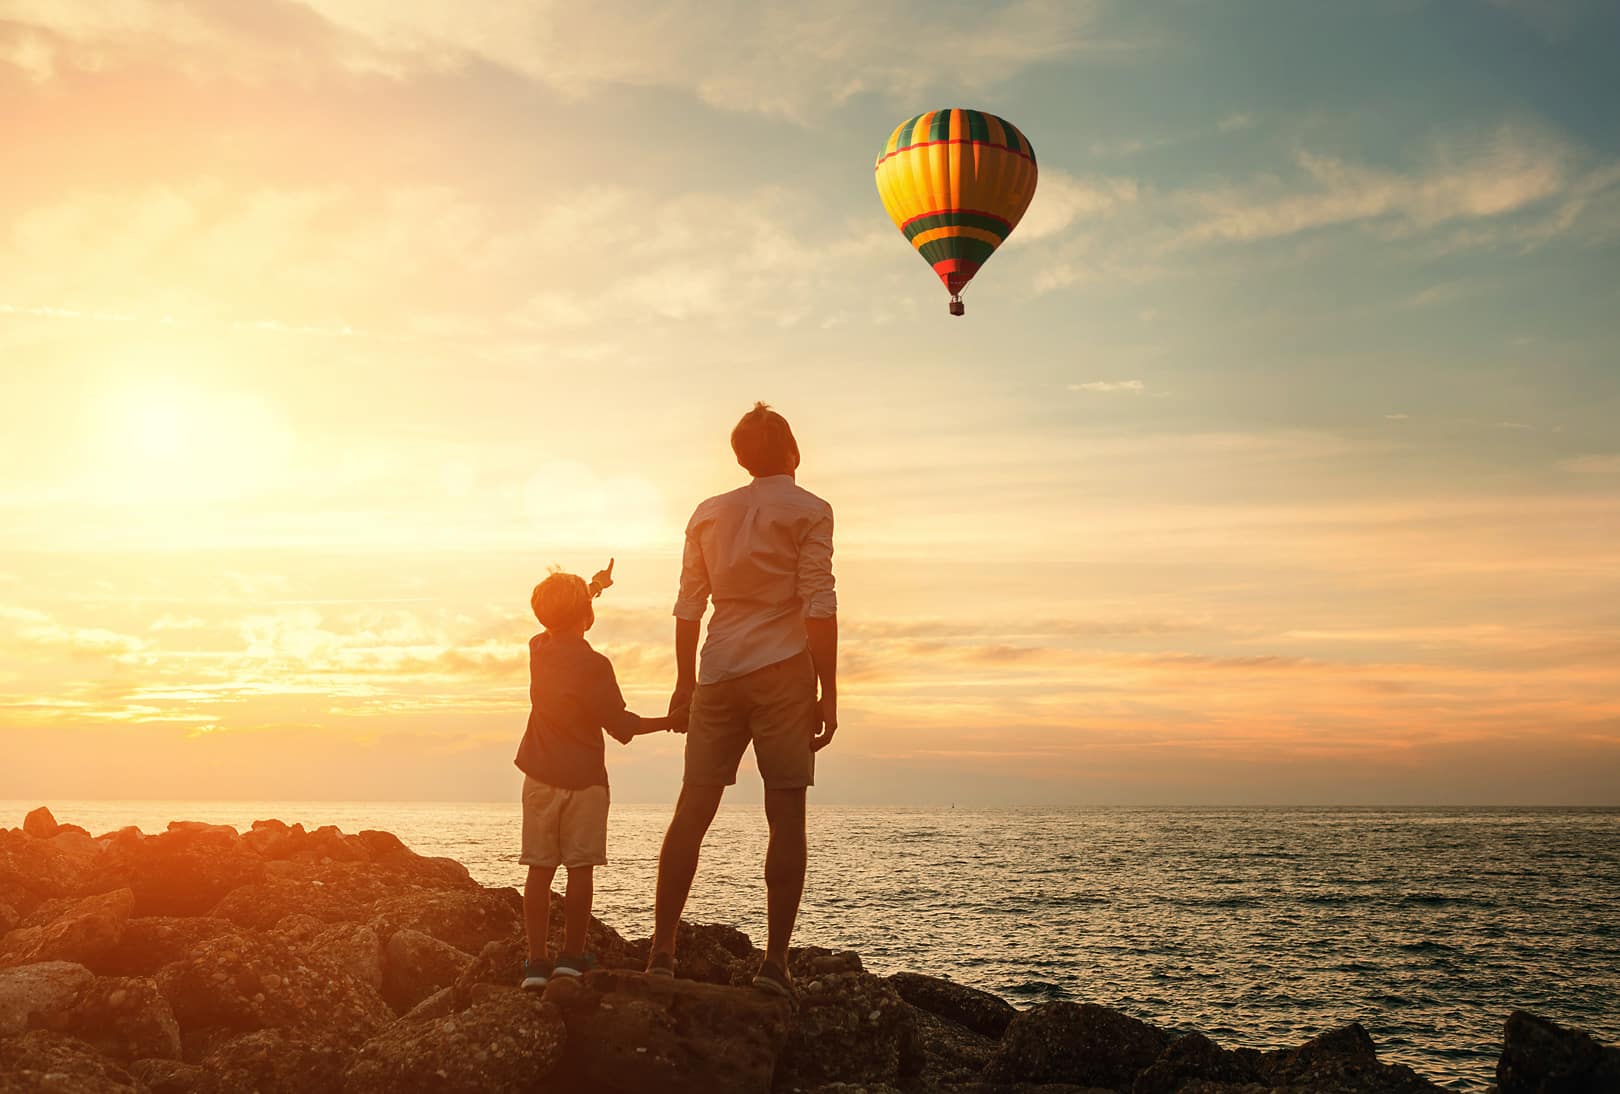 Imagem de um adulto e uma criança observando um balão que sobrevoa o céu